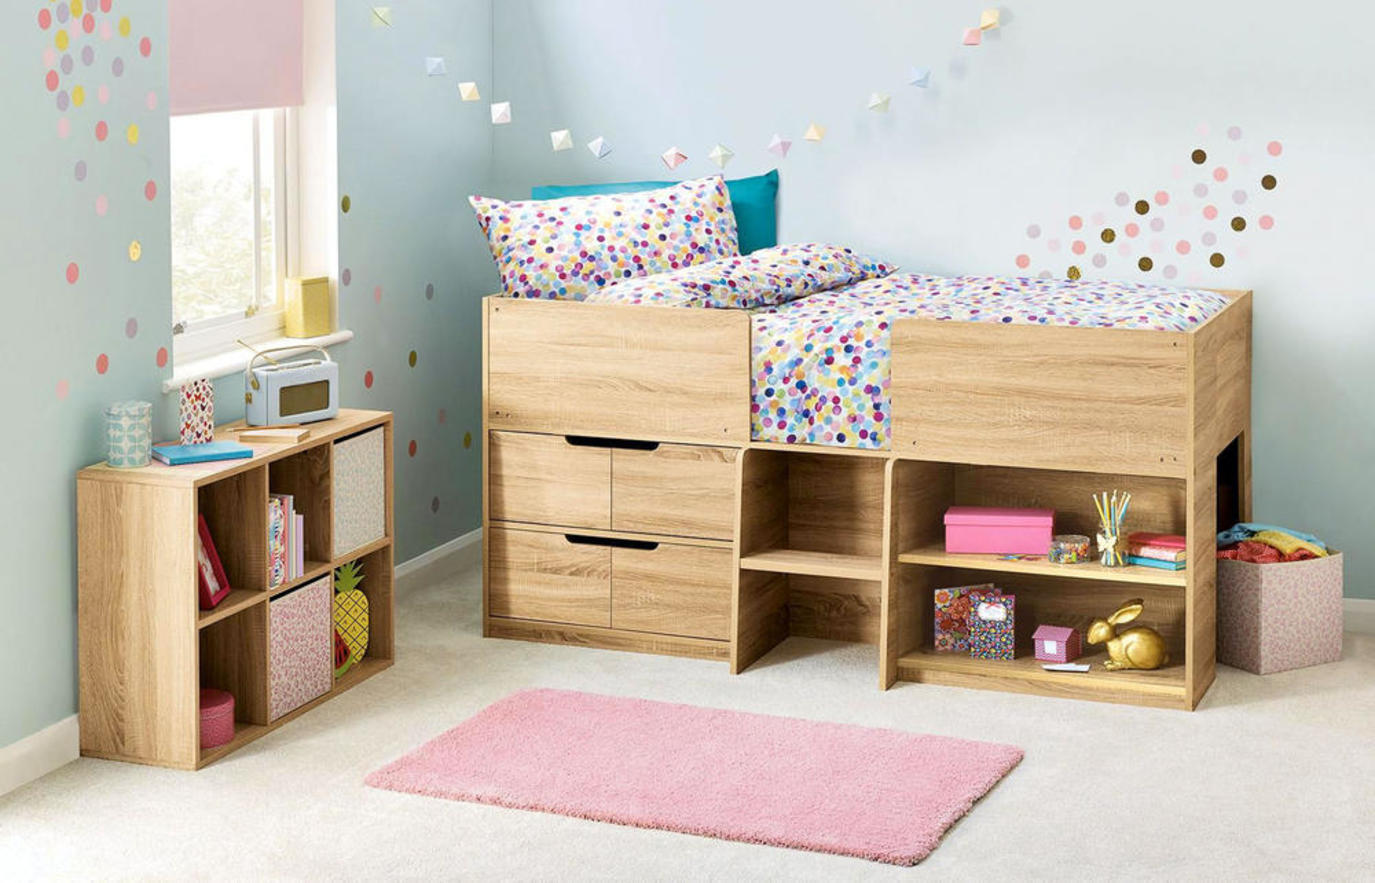 غرف نوم اطفال ضيقة في تصاميم ديكور ذكية مجلة سيدتي